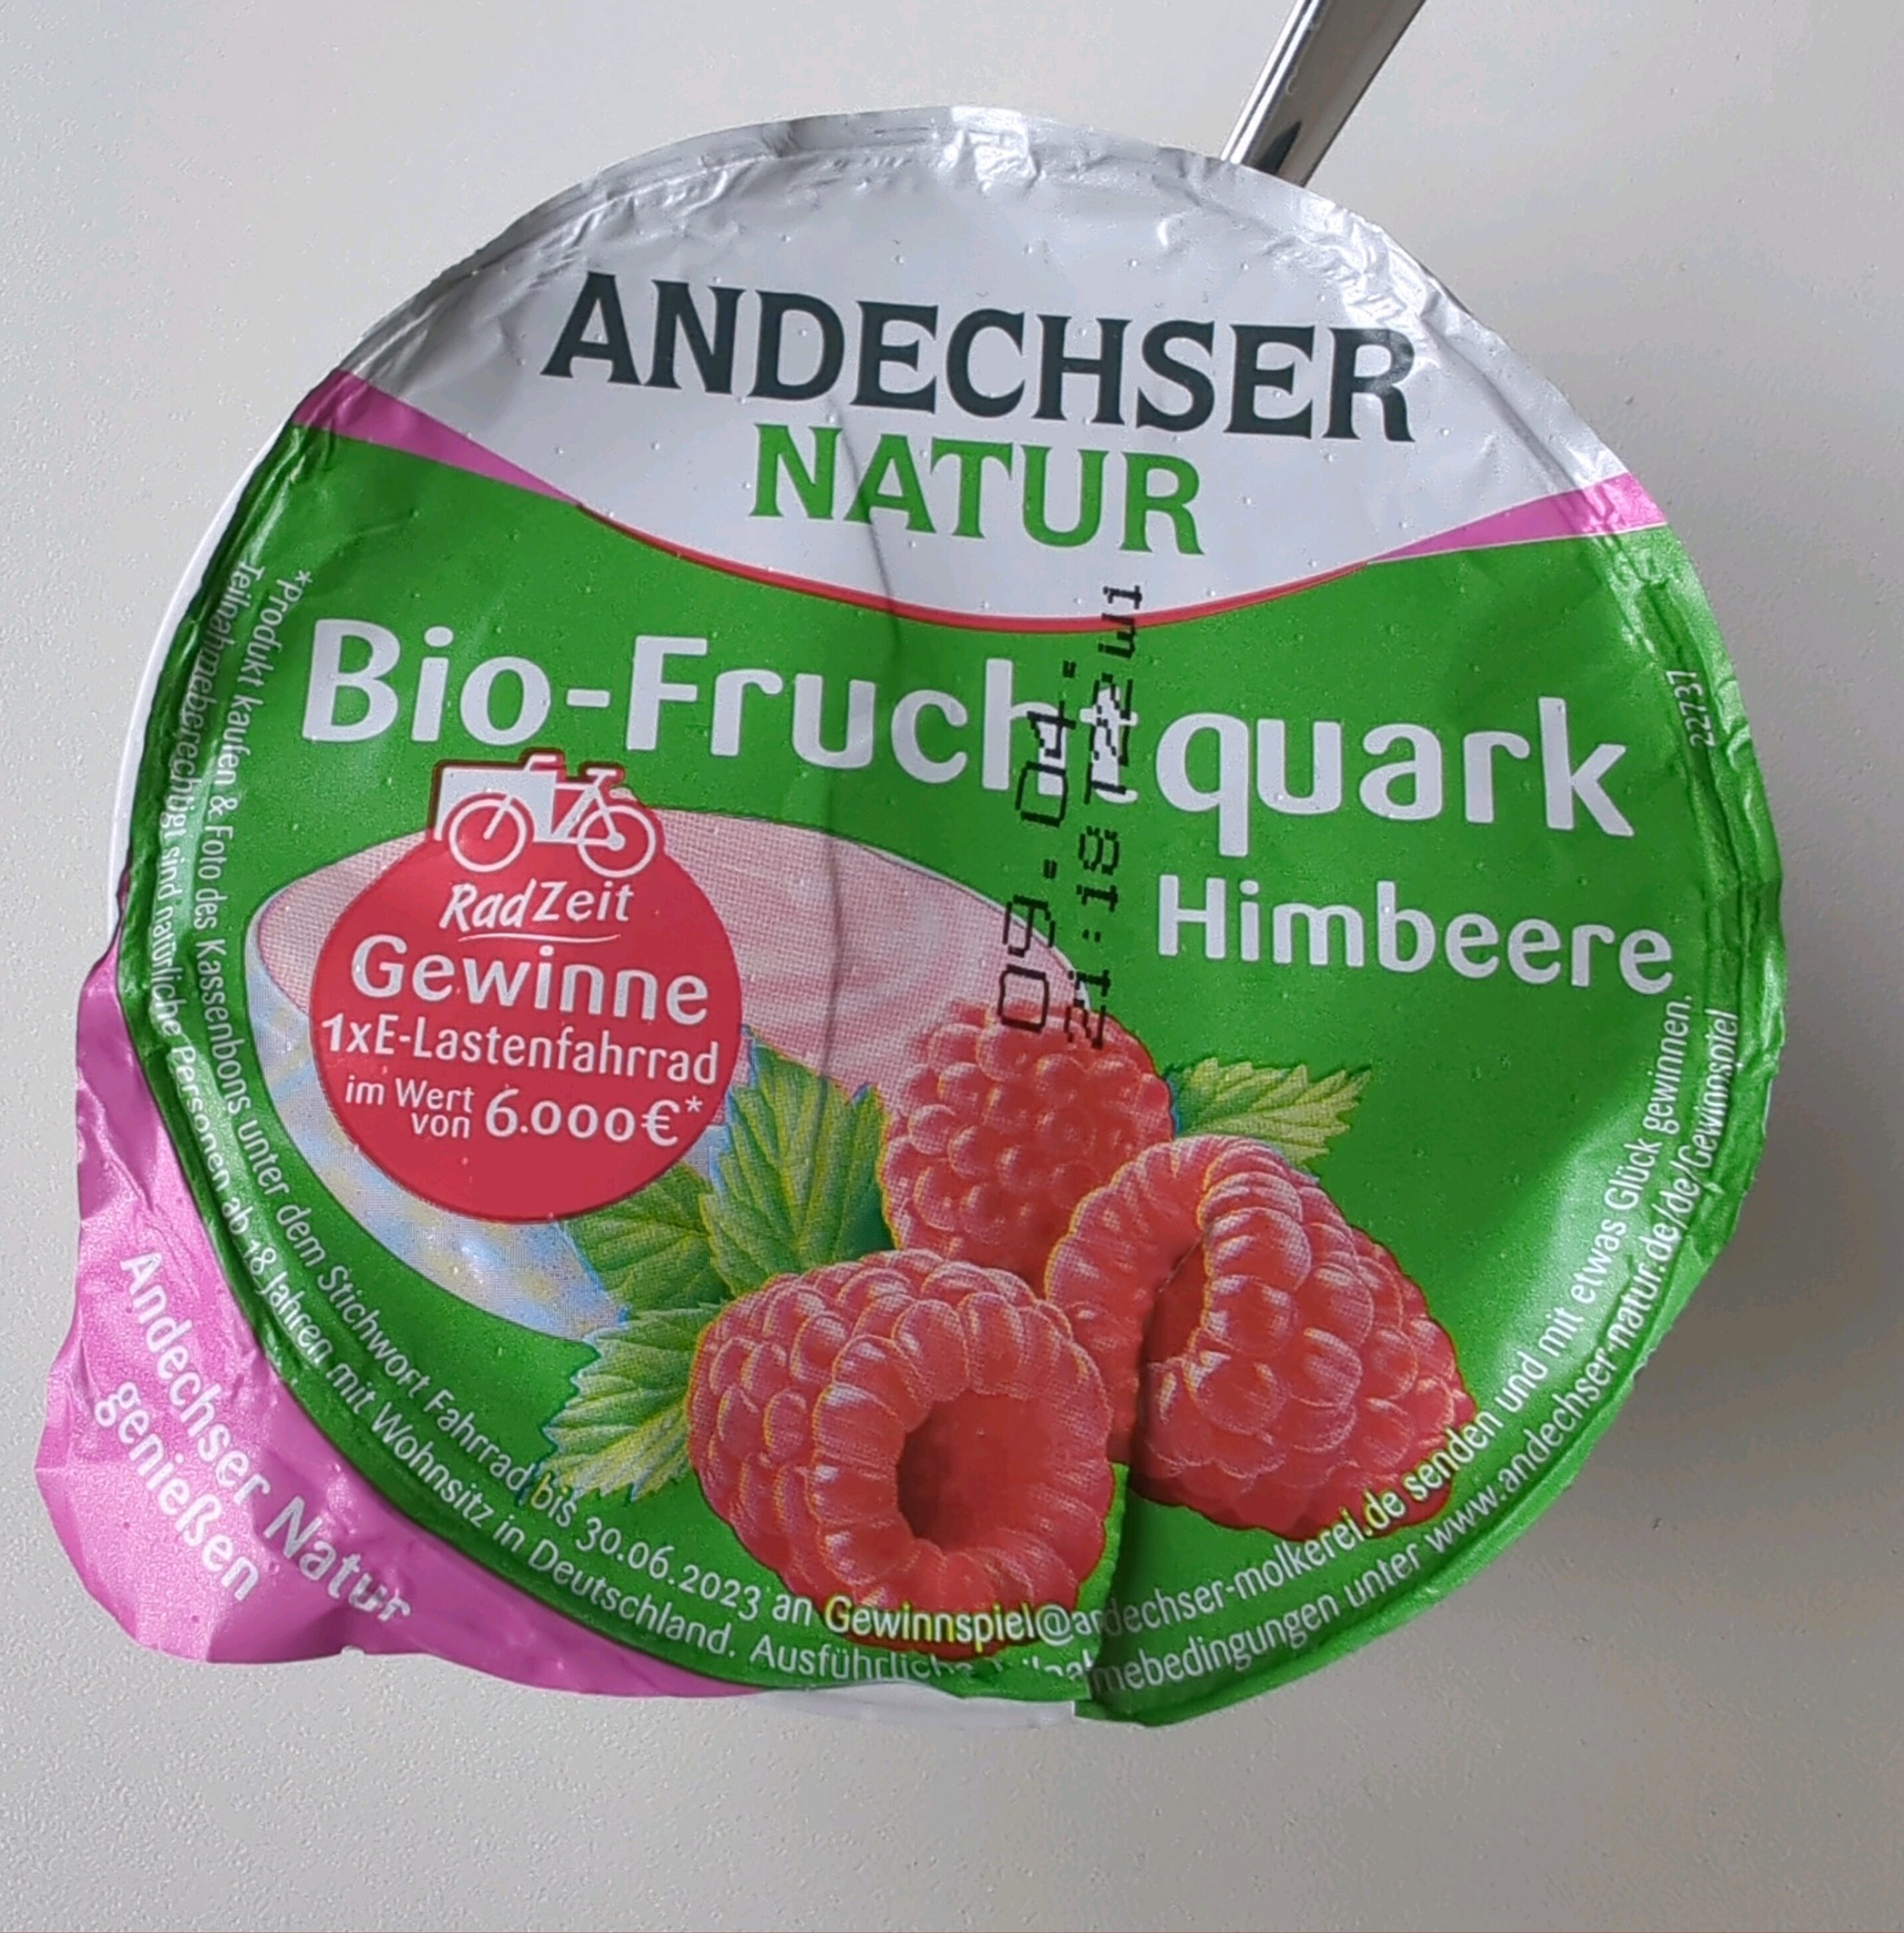 Bio-Fruchtquark - Himbeere - Andechser Natur 150 g 